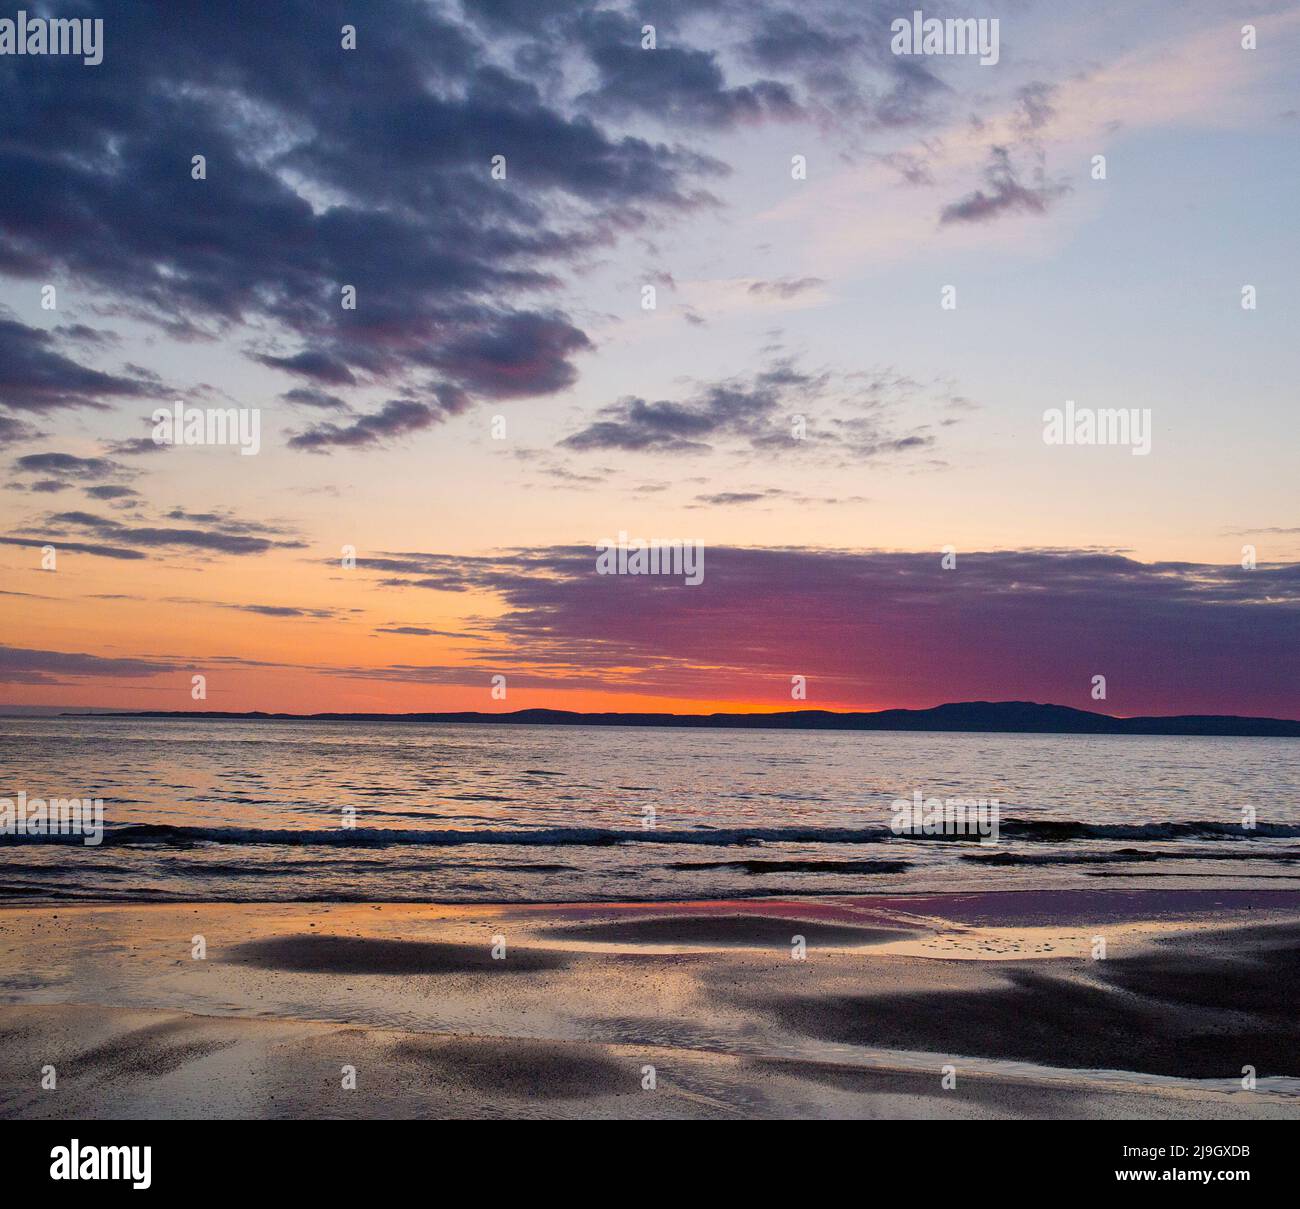 Sunset on Kintra beach, Islay, Inner Hebrides, Scotland Stock Photo